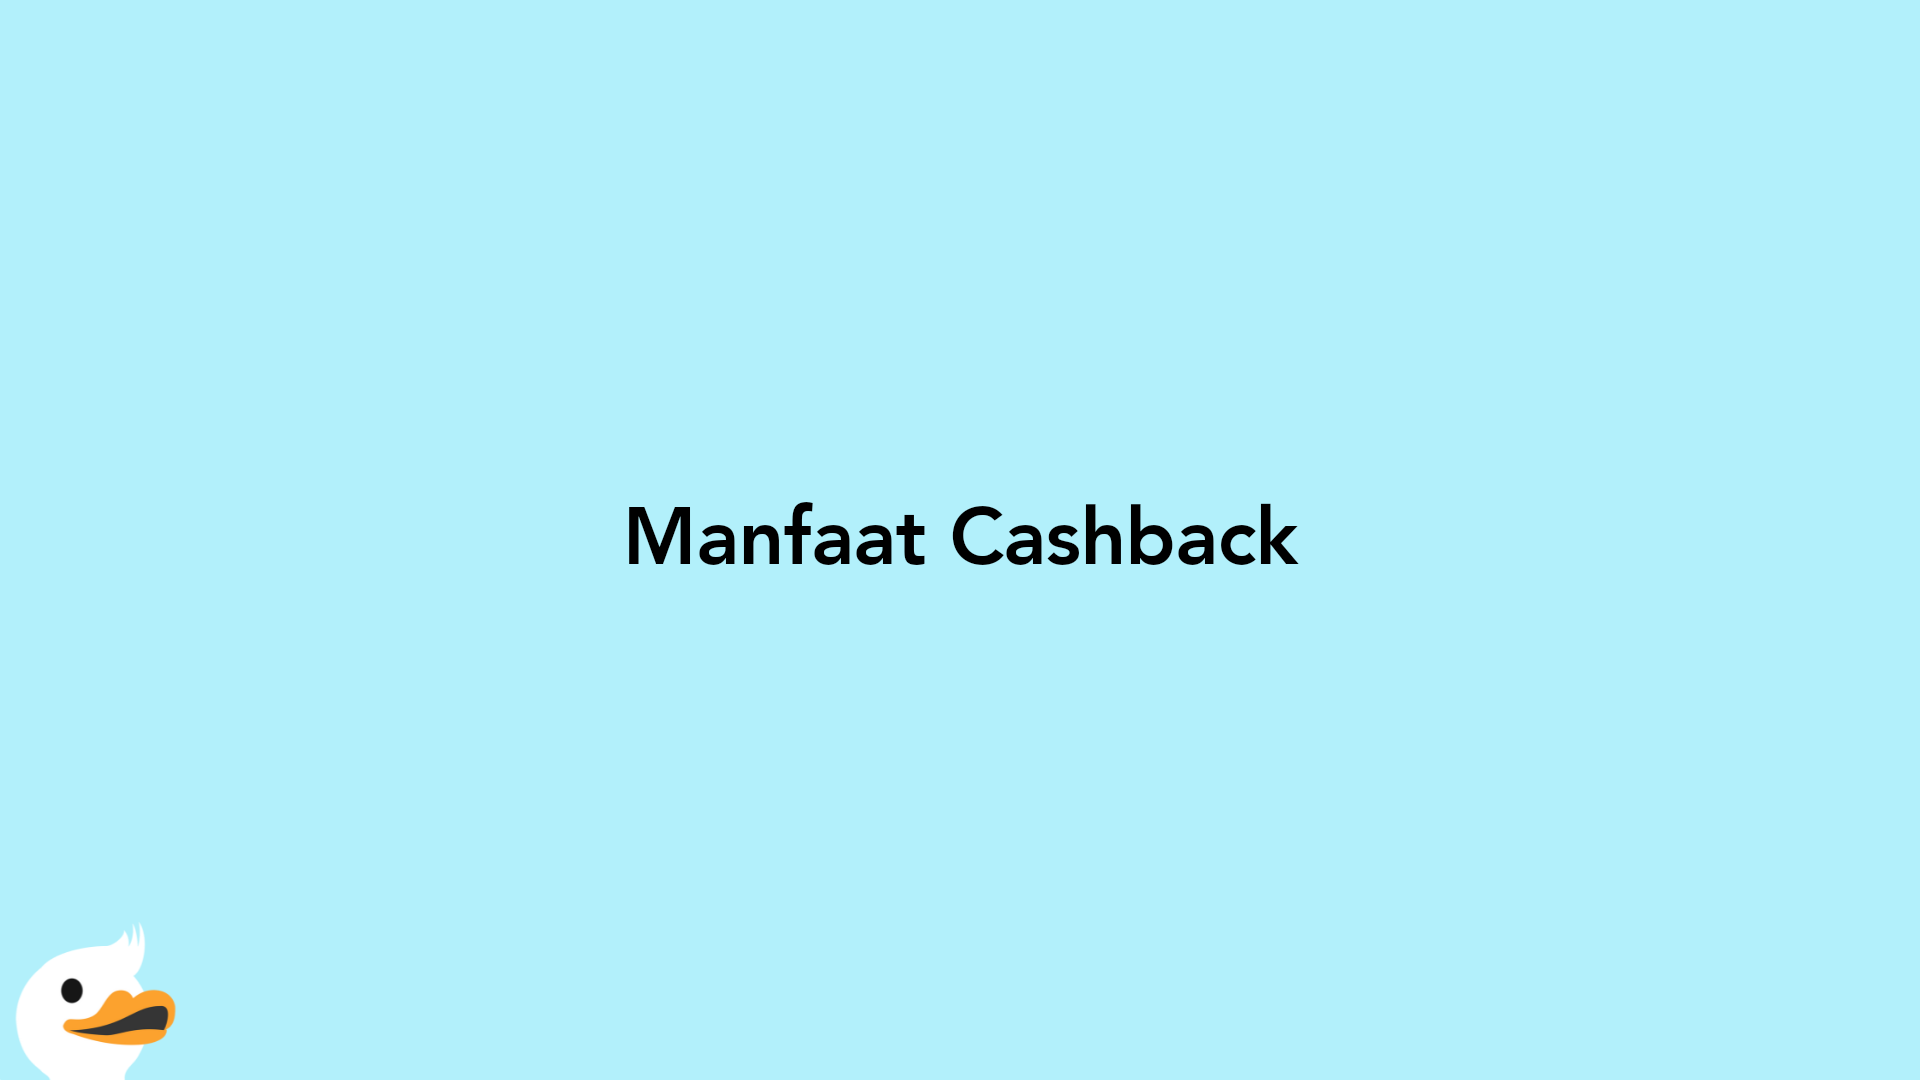 Manfaat Cashback